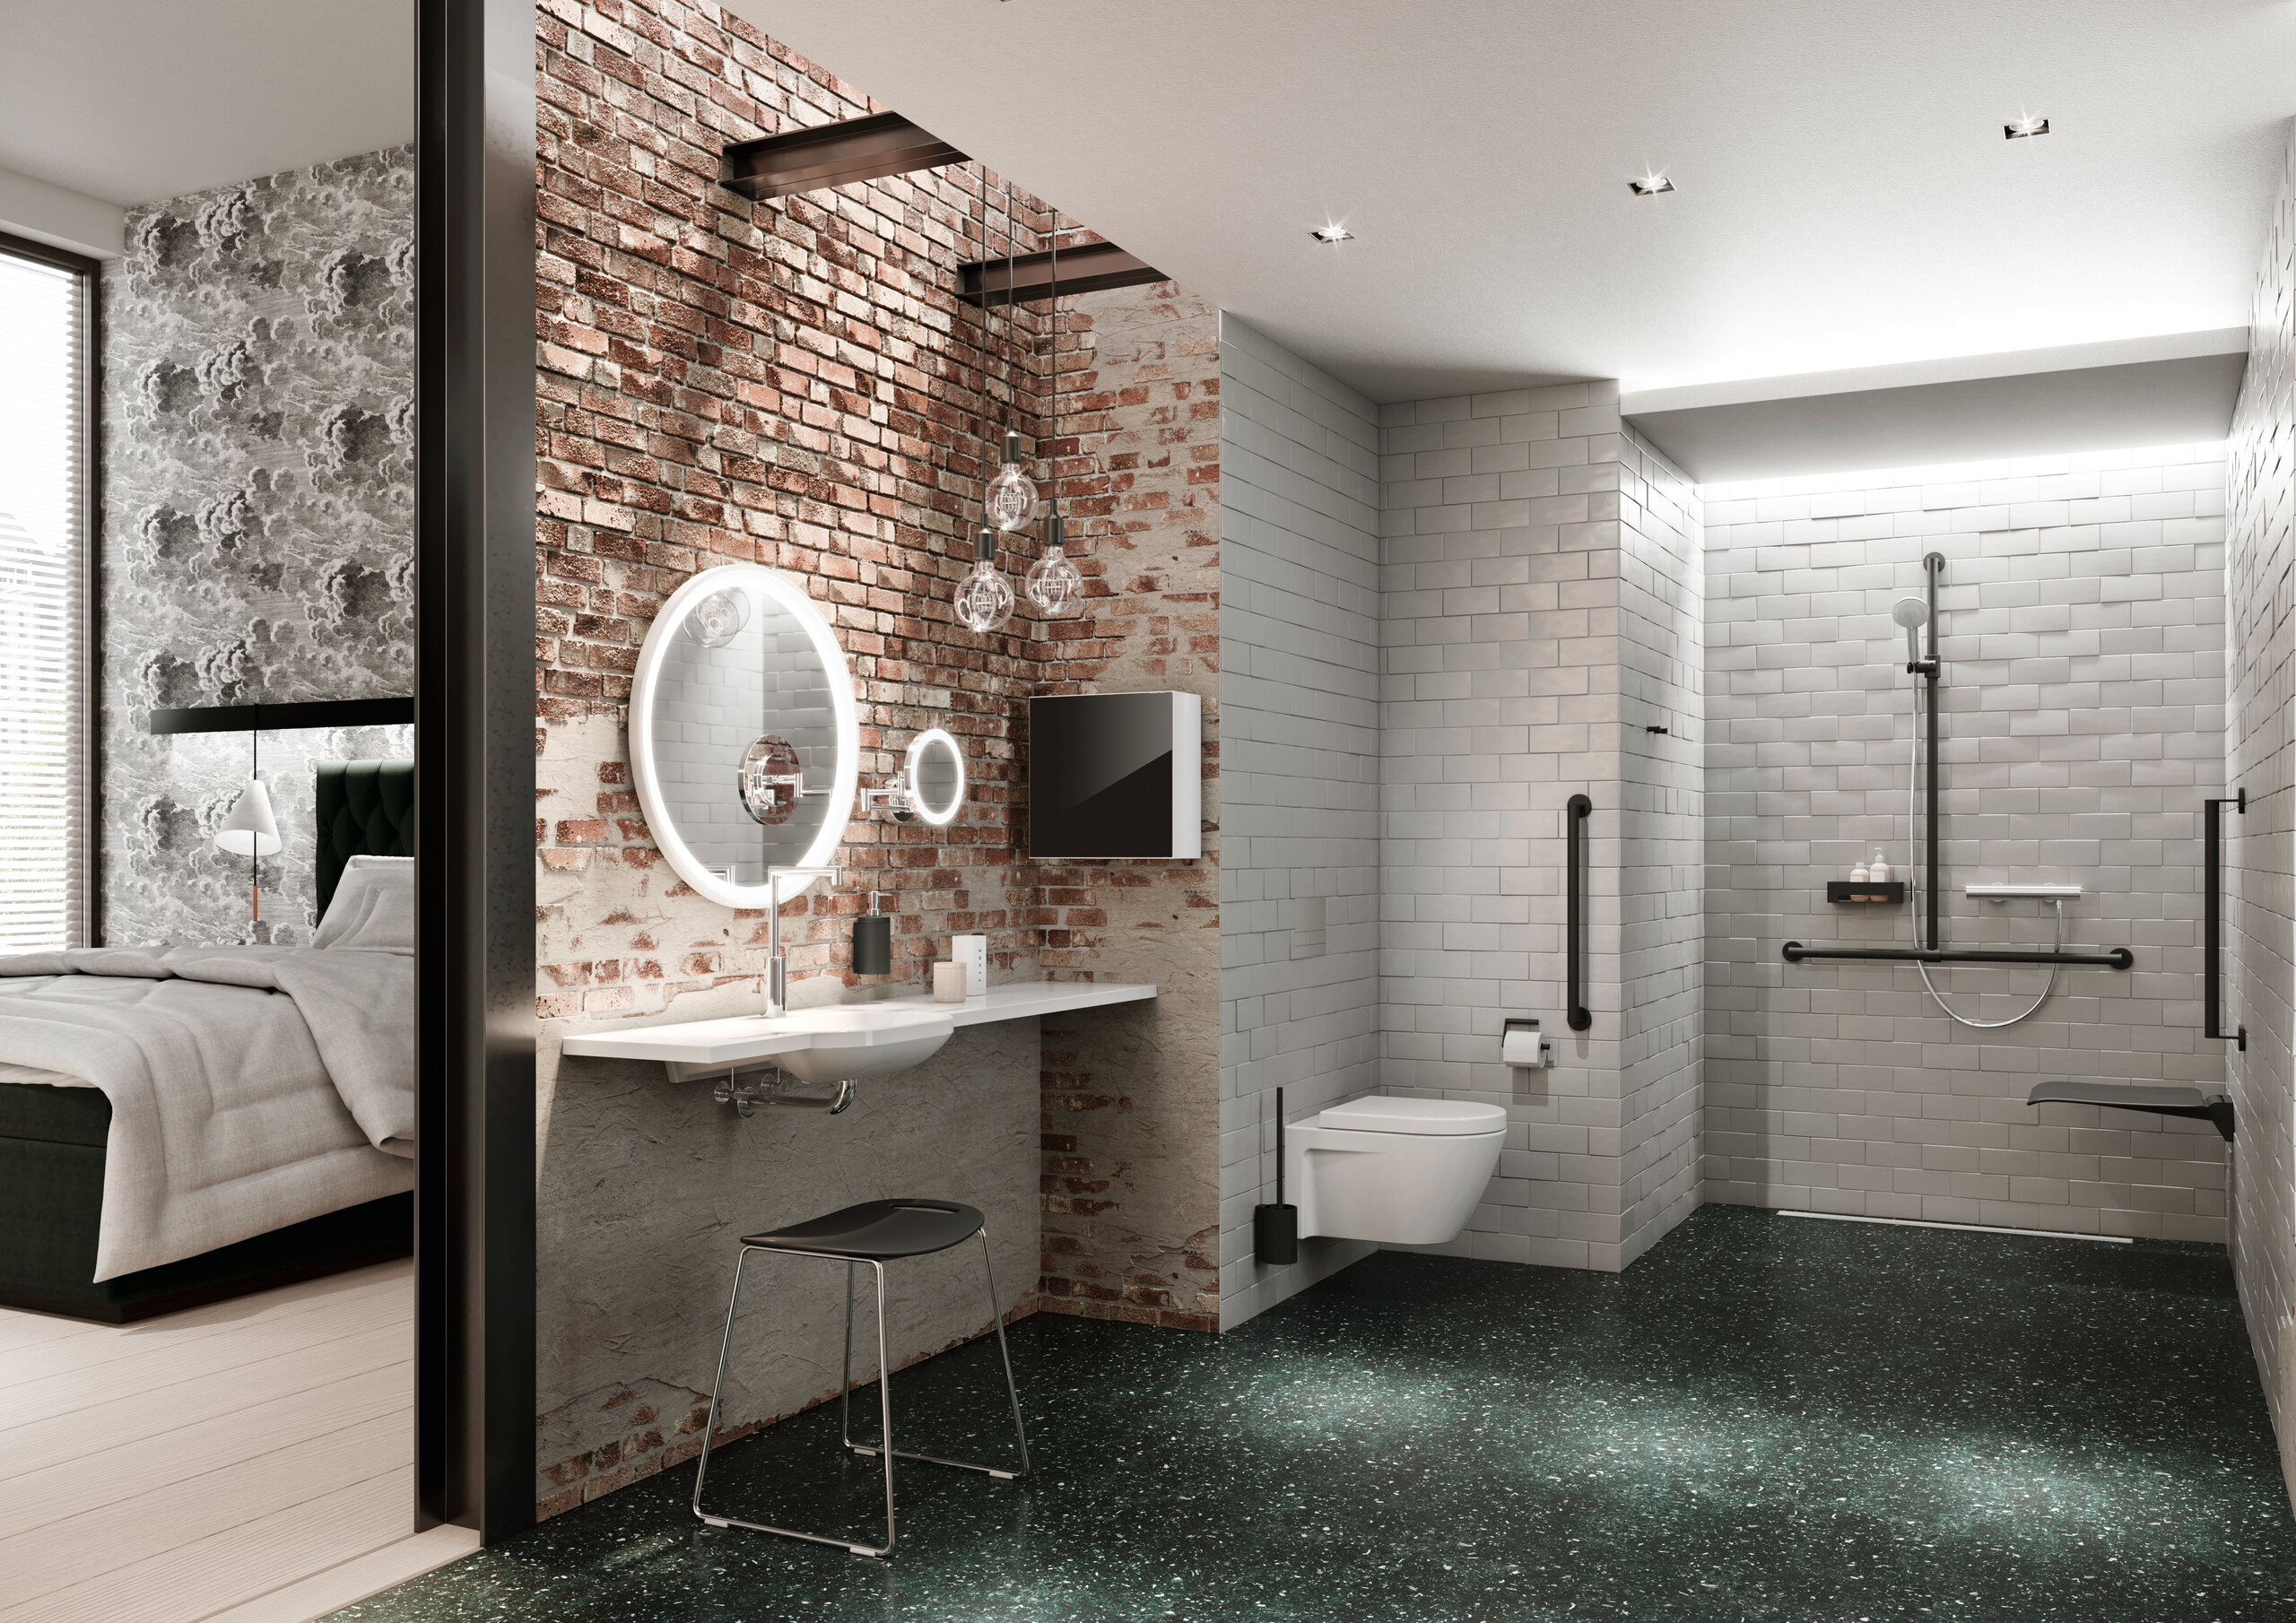 Barrierefreies Hotelbadezimmer mit Waschplatz, Duschbereich und WC, ausgestattet mit HEWI System 900 in Schwarz matt